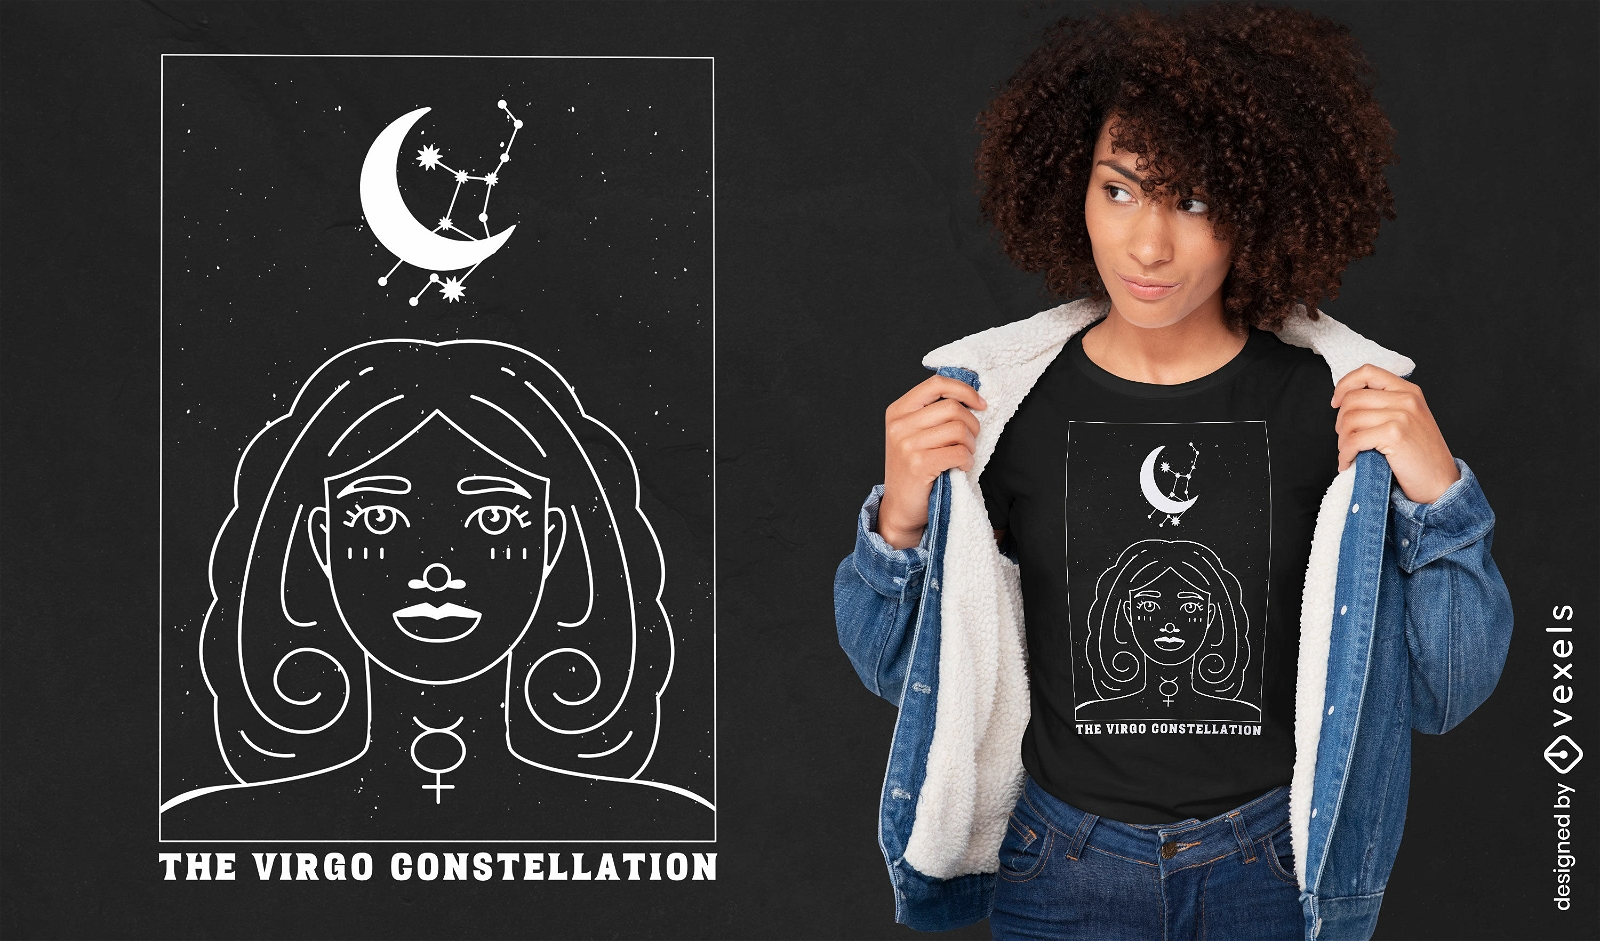 Virgo constellation t-shirt design